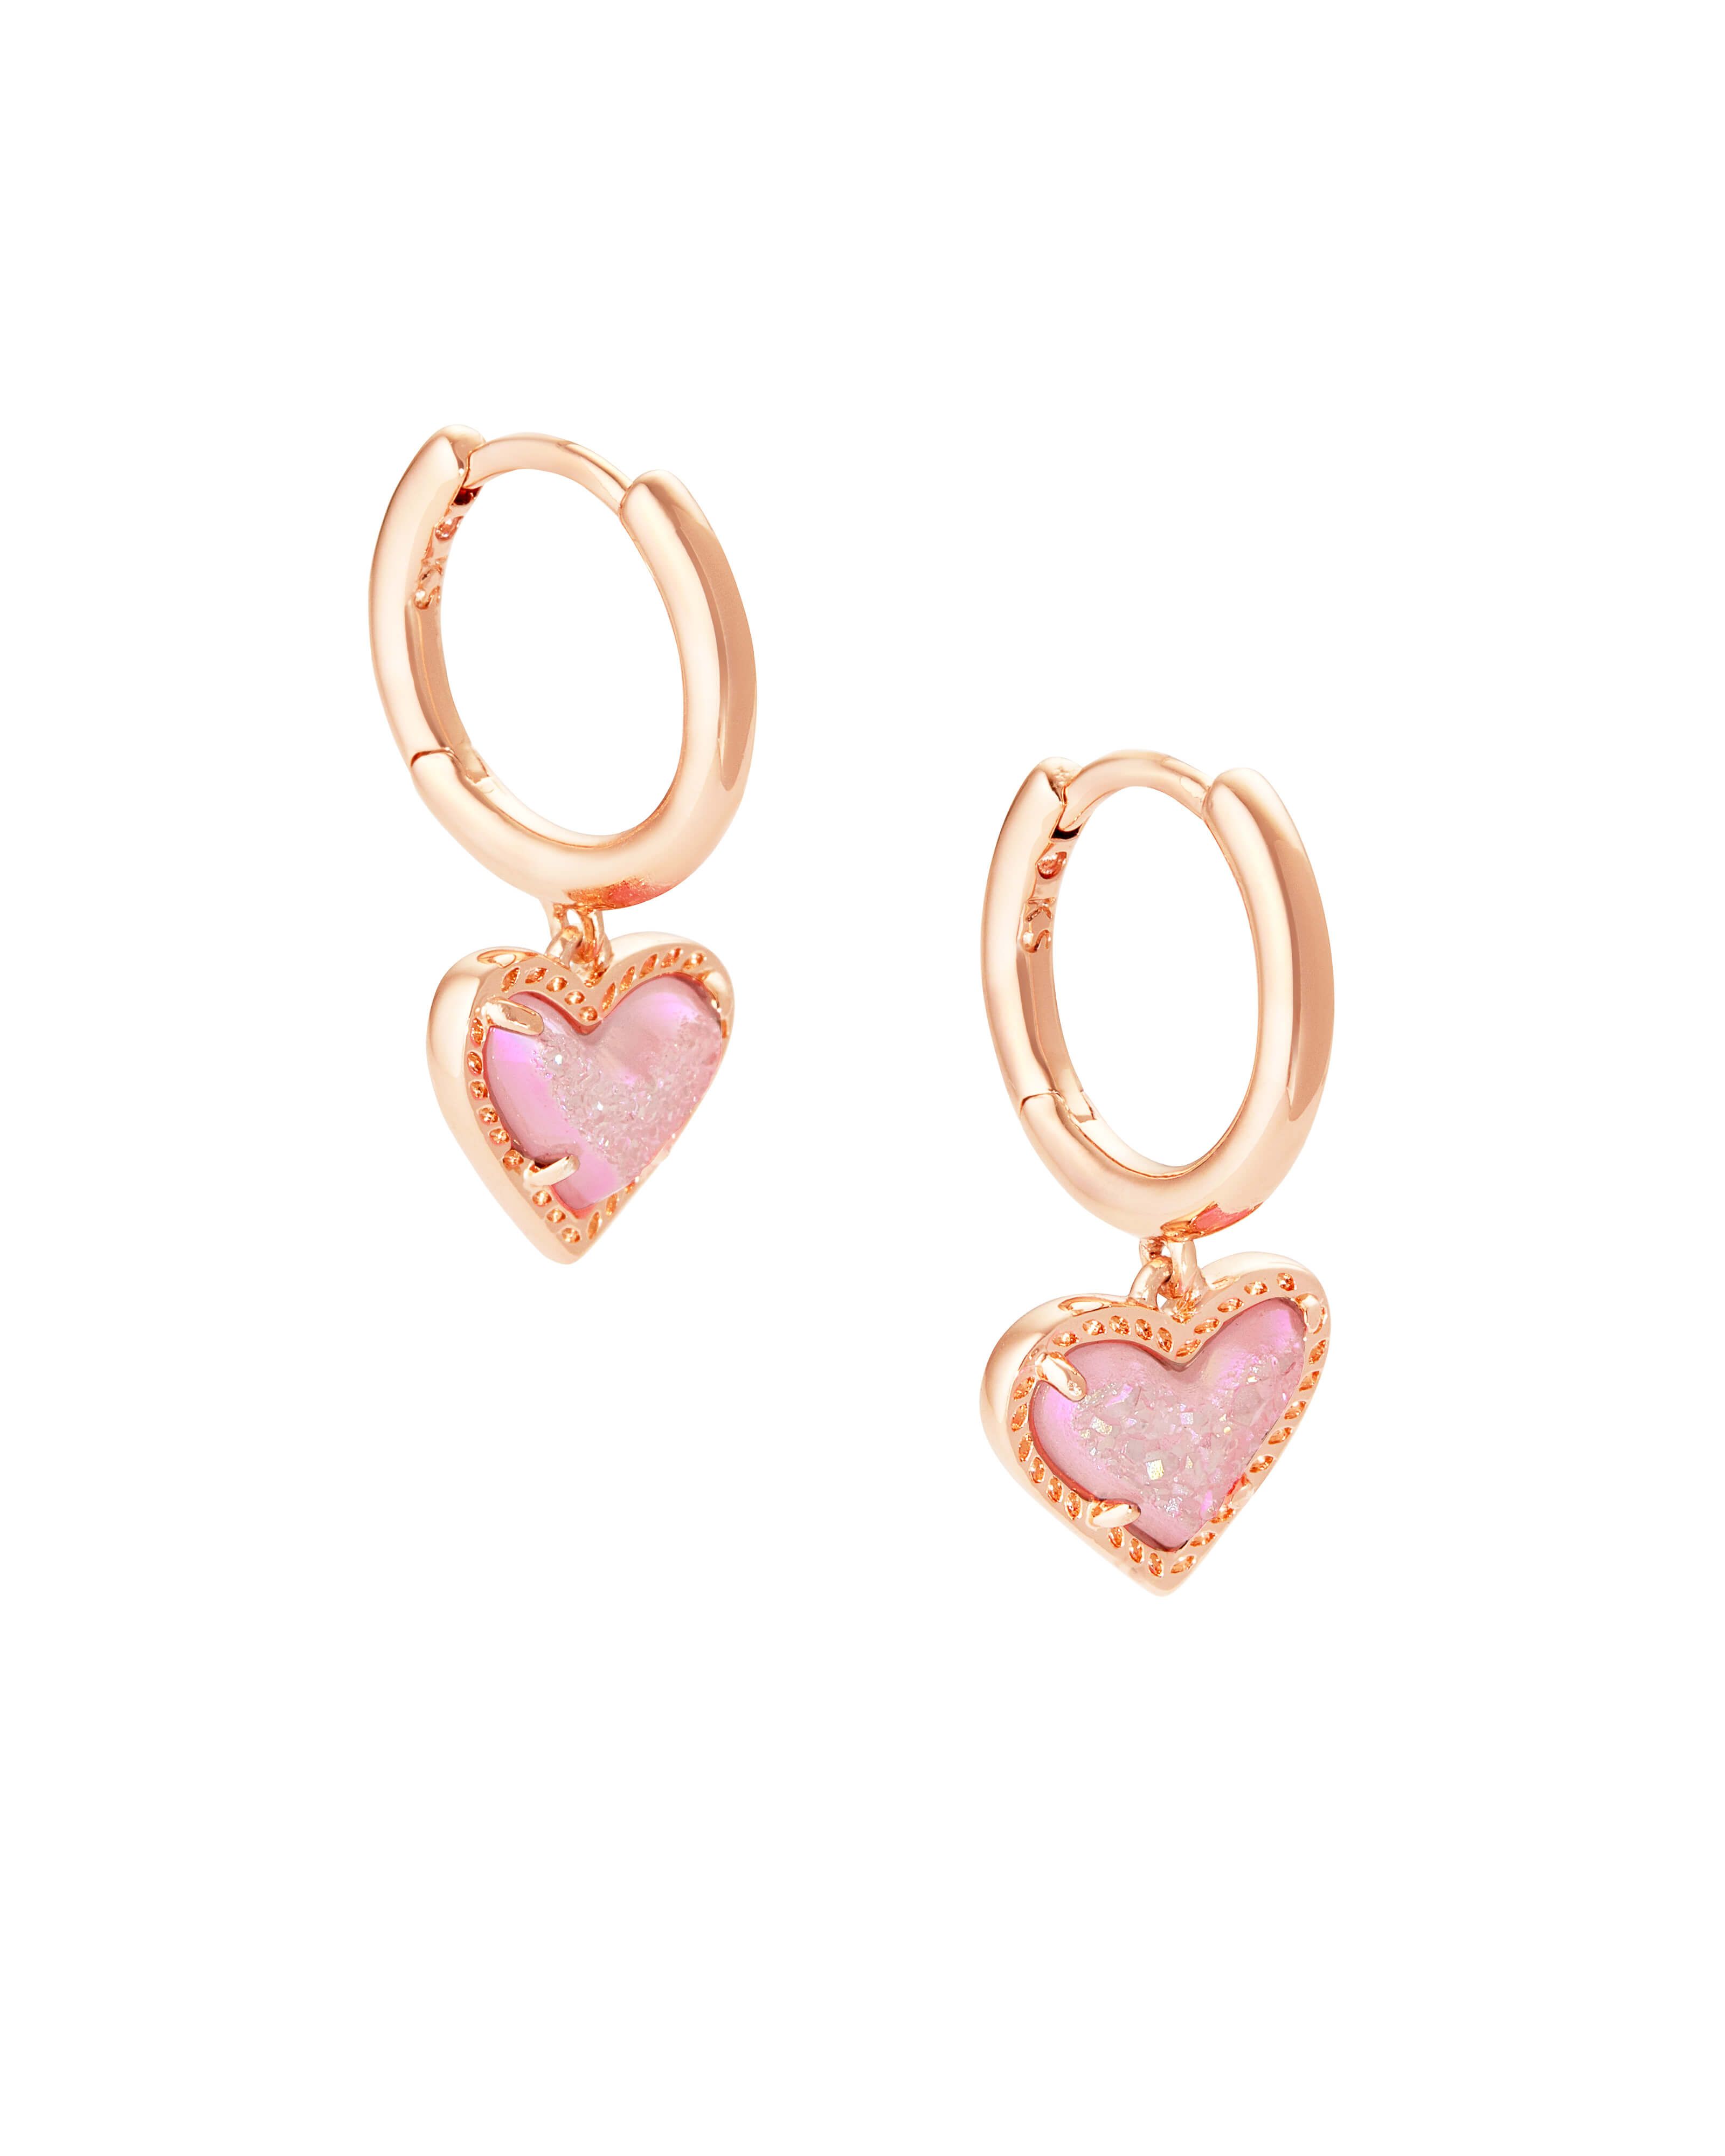 Ari Heart Rose Gold Huggie Earrings in Light Pink Drusy | Kendra Scott